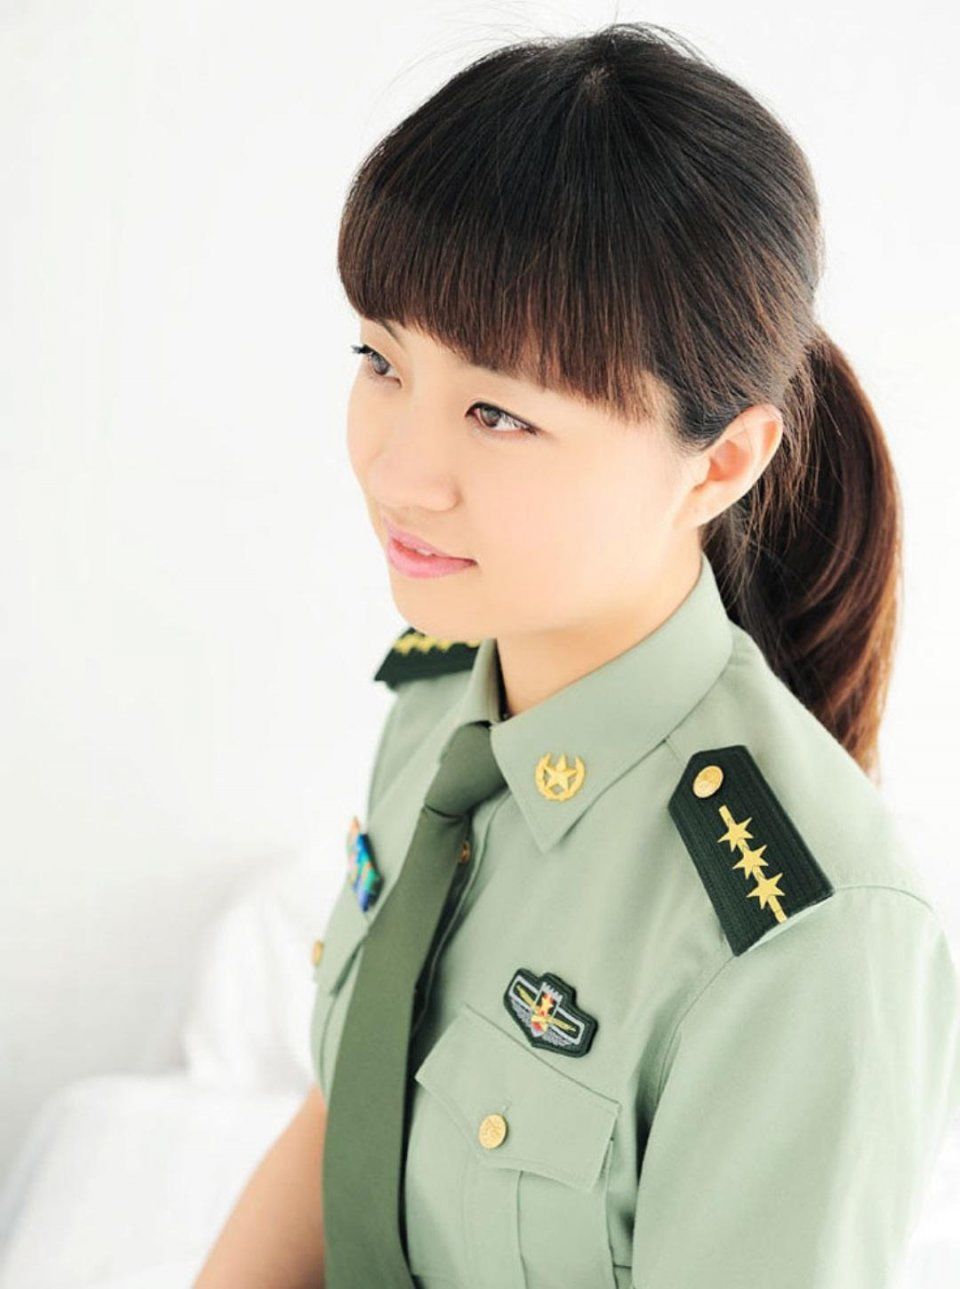 军人的坚毅与柔美:部队女战士穿军装拍艺术照